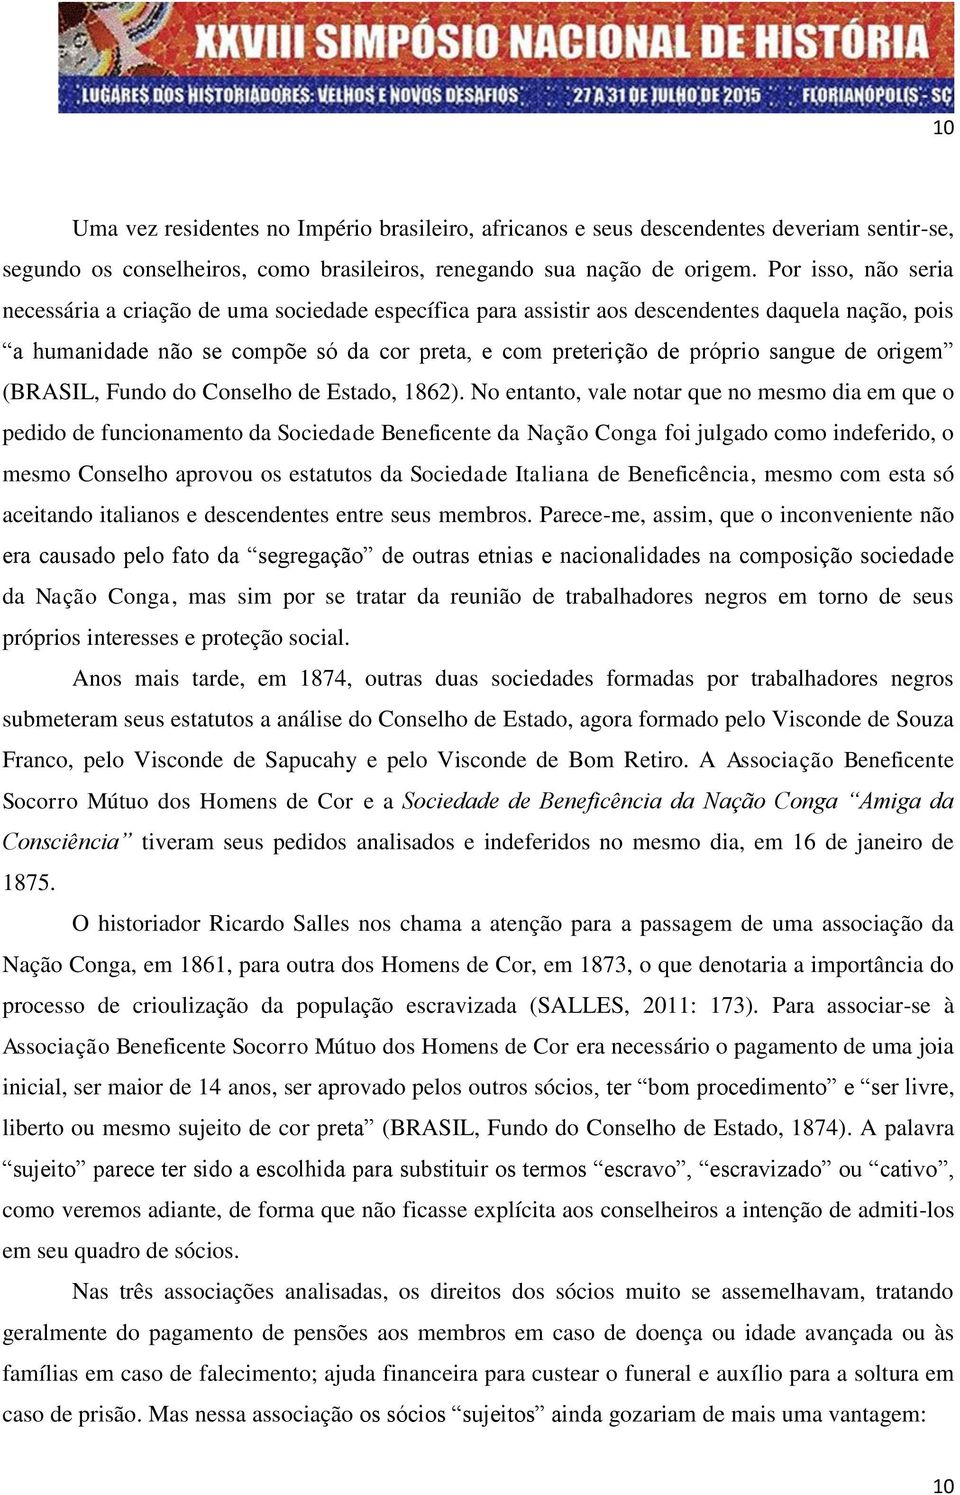 de origem (BRASIL, Fundo do Conselho de Estado, 1862).